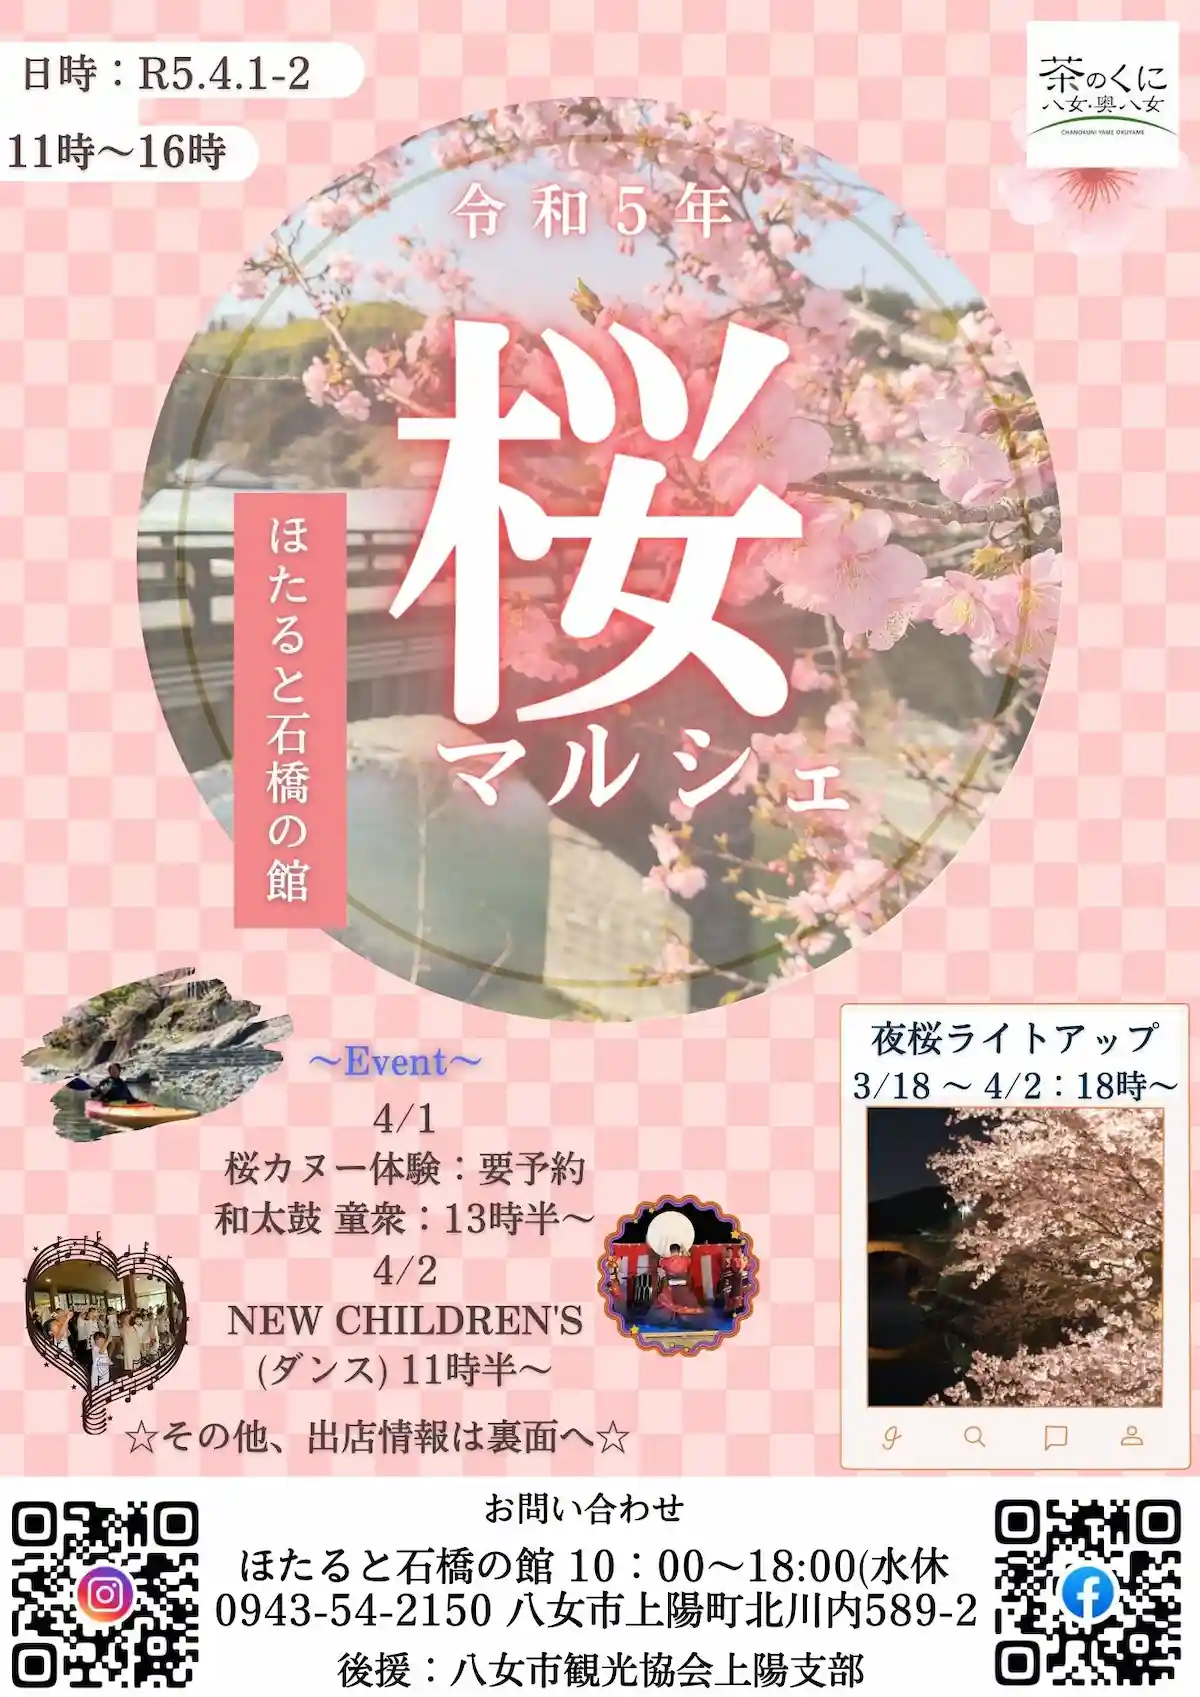 ほたると石橋の館「桜マルシェ」4月1日、2日開催　美味しいものかわいいものがいっぱい！（八女市上陽町）